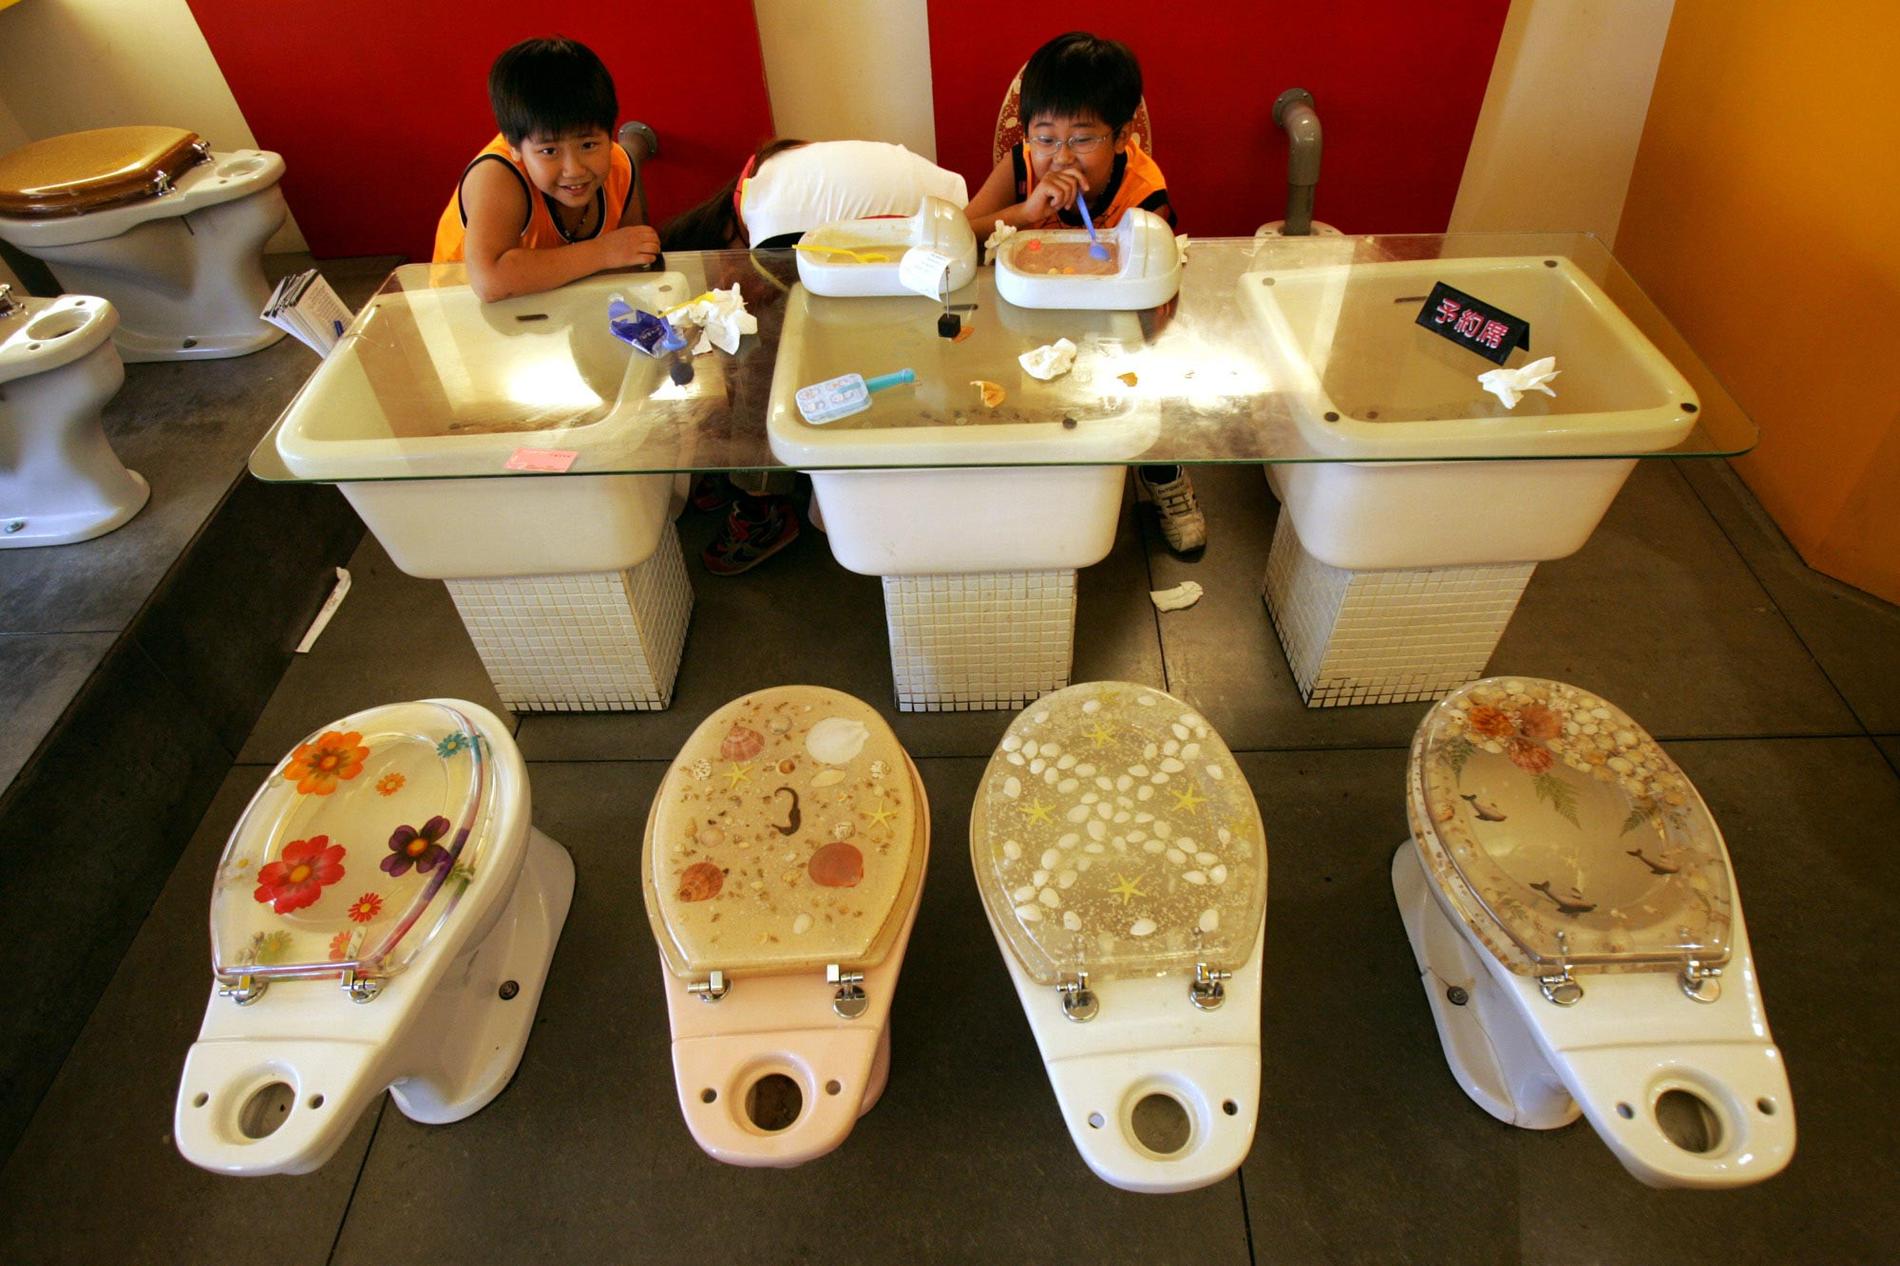 MODERN TOILET Ännu en märklig krog i Taipei. Här får du sitta och äta på toalettskålar (med locket nere). Rätterna som serveras är också i en klass för sig, till exempel bajsformad glass serverad på toalettformat porslin.
Tro det eller ej. Konceptet gillas och restaurangen är populär både bland lokalbefolkning och turister.